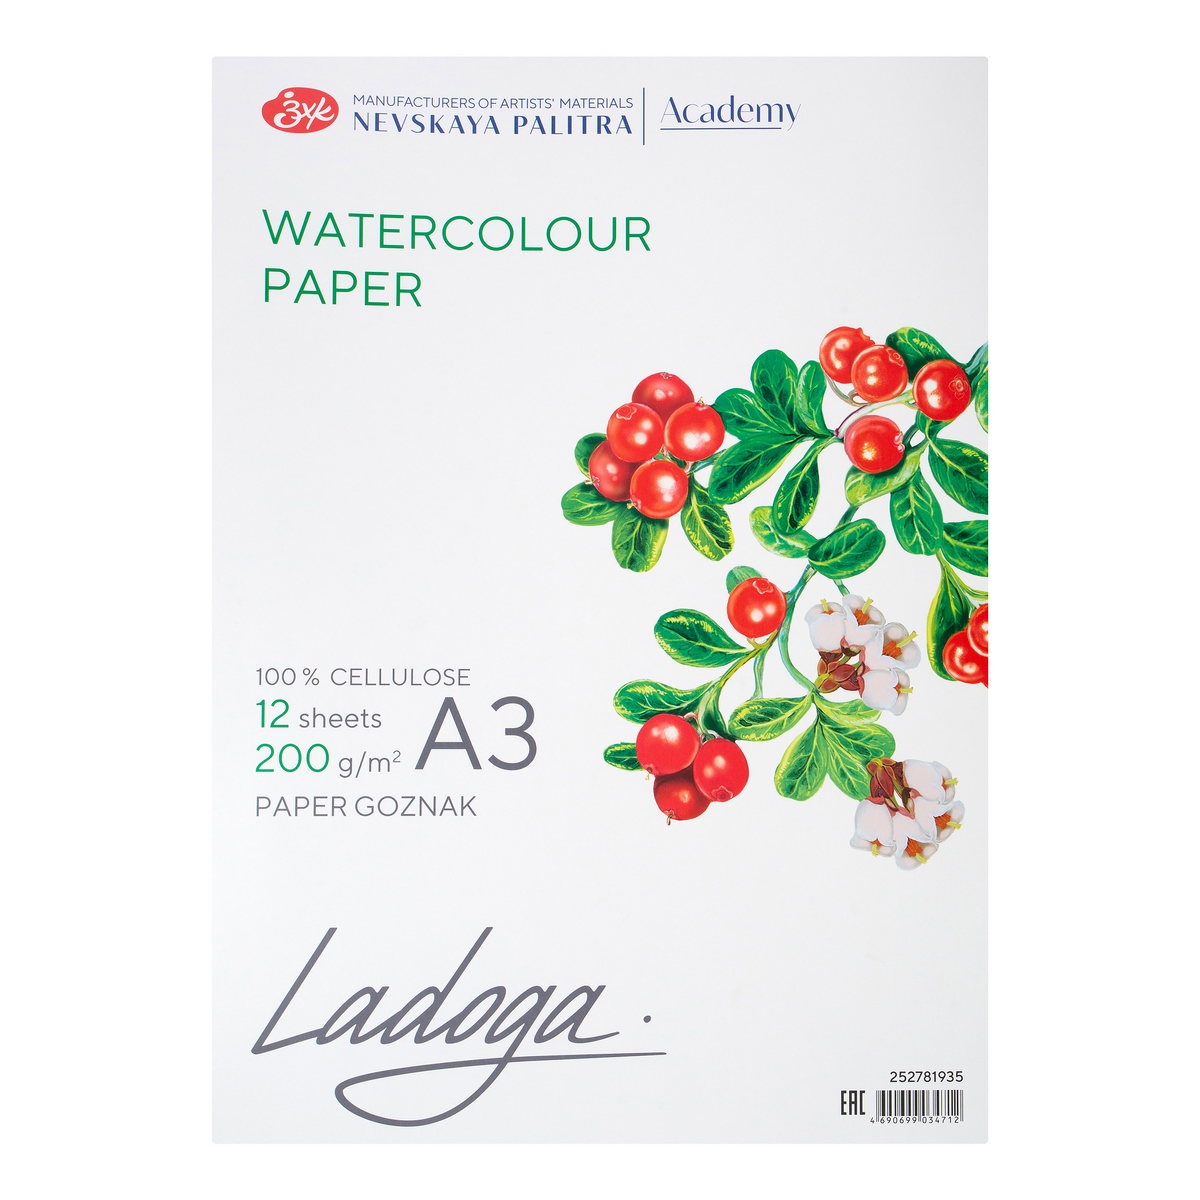 Watercolour paper folder Ladoga, А3, 200 g/m2, 12 sheets, 100% cellulose, medium grain